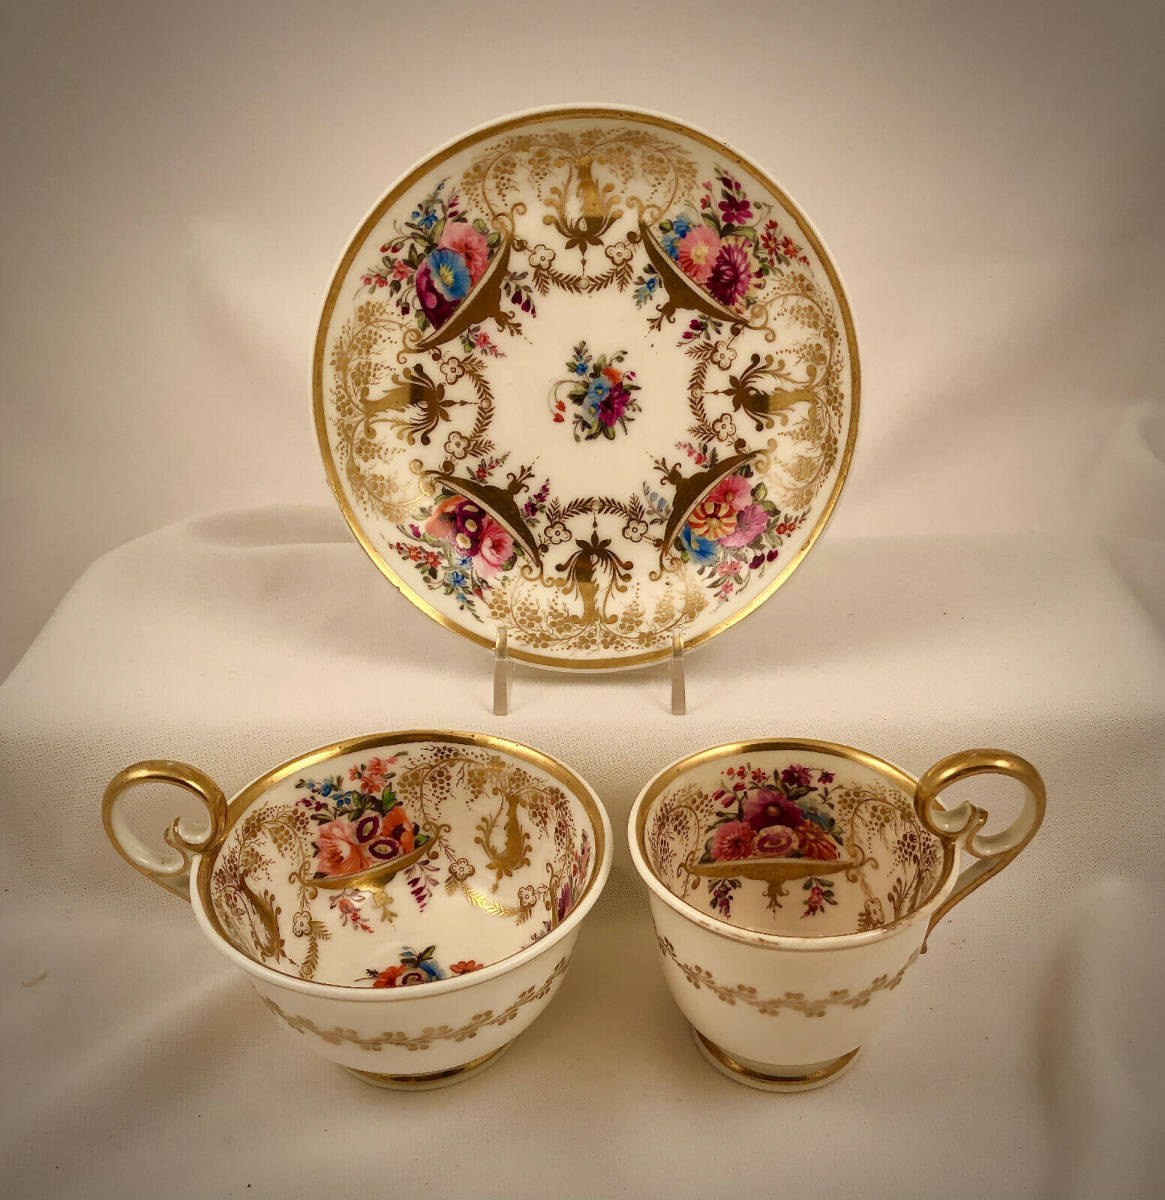 古董南特湾茶咖啡杯带碟手绘约 1817 年古董古董复古, 厨房, 餐具, 餐具, 其他的